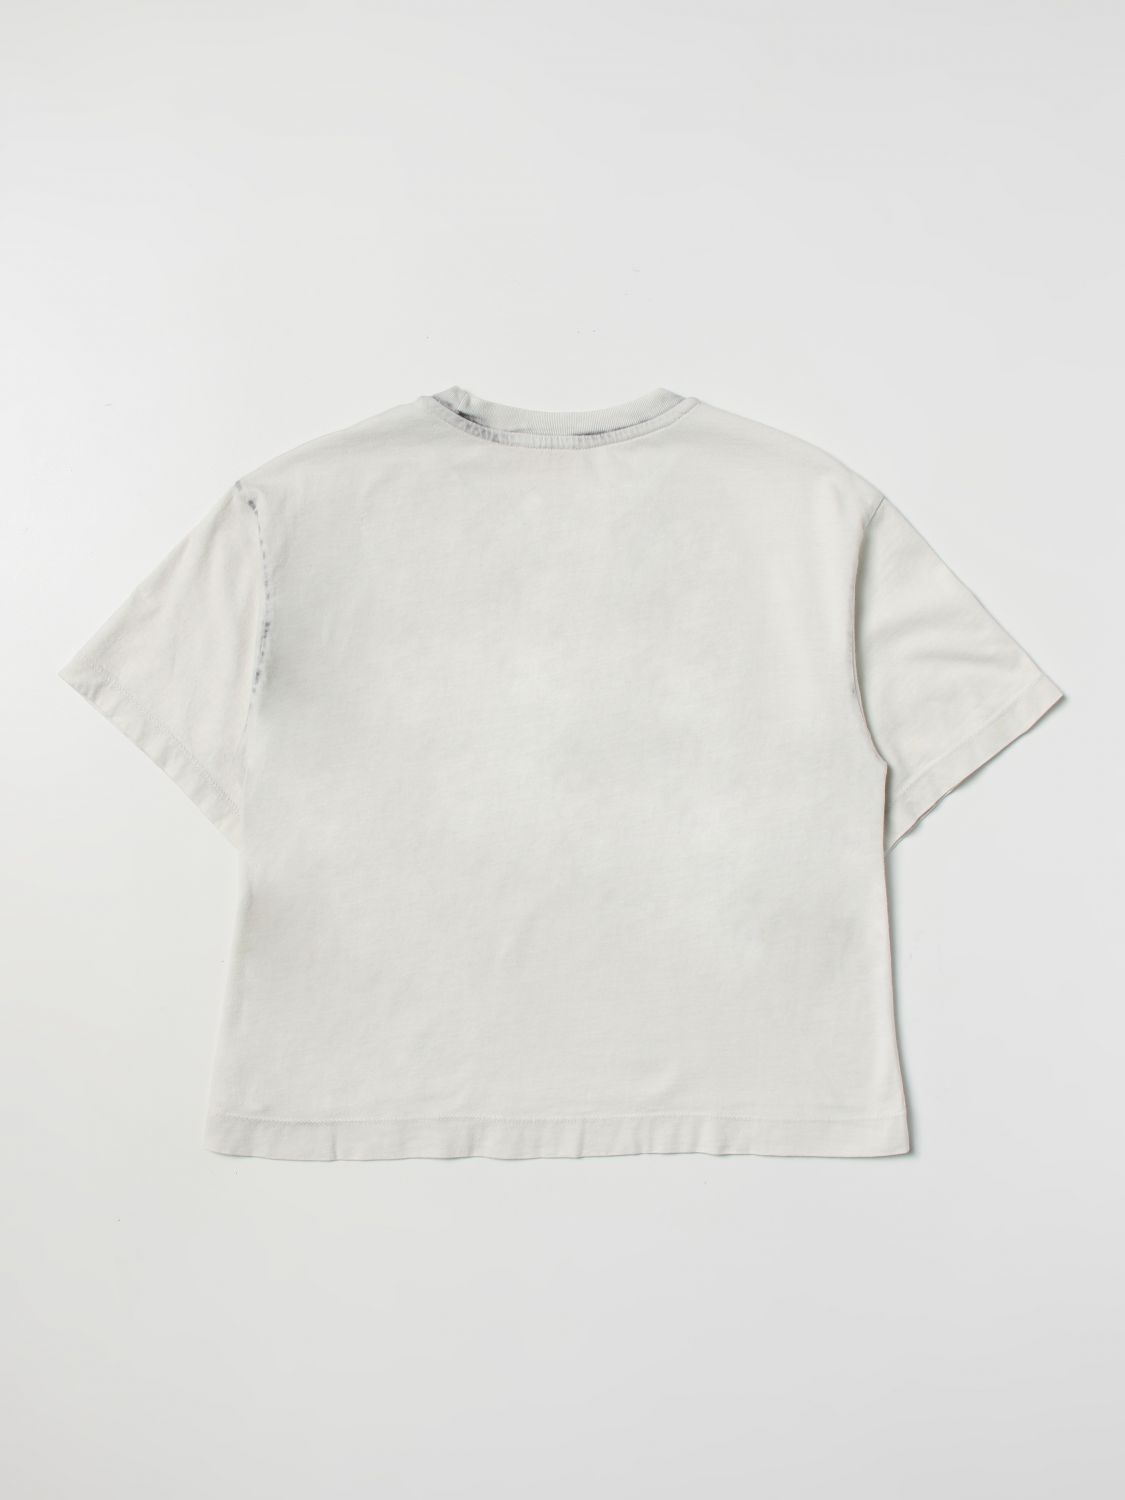 T-shirt Diesel: Diesel t-shirt for girls white 2